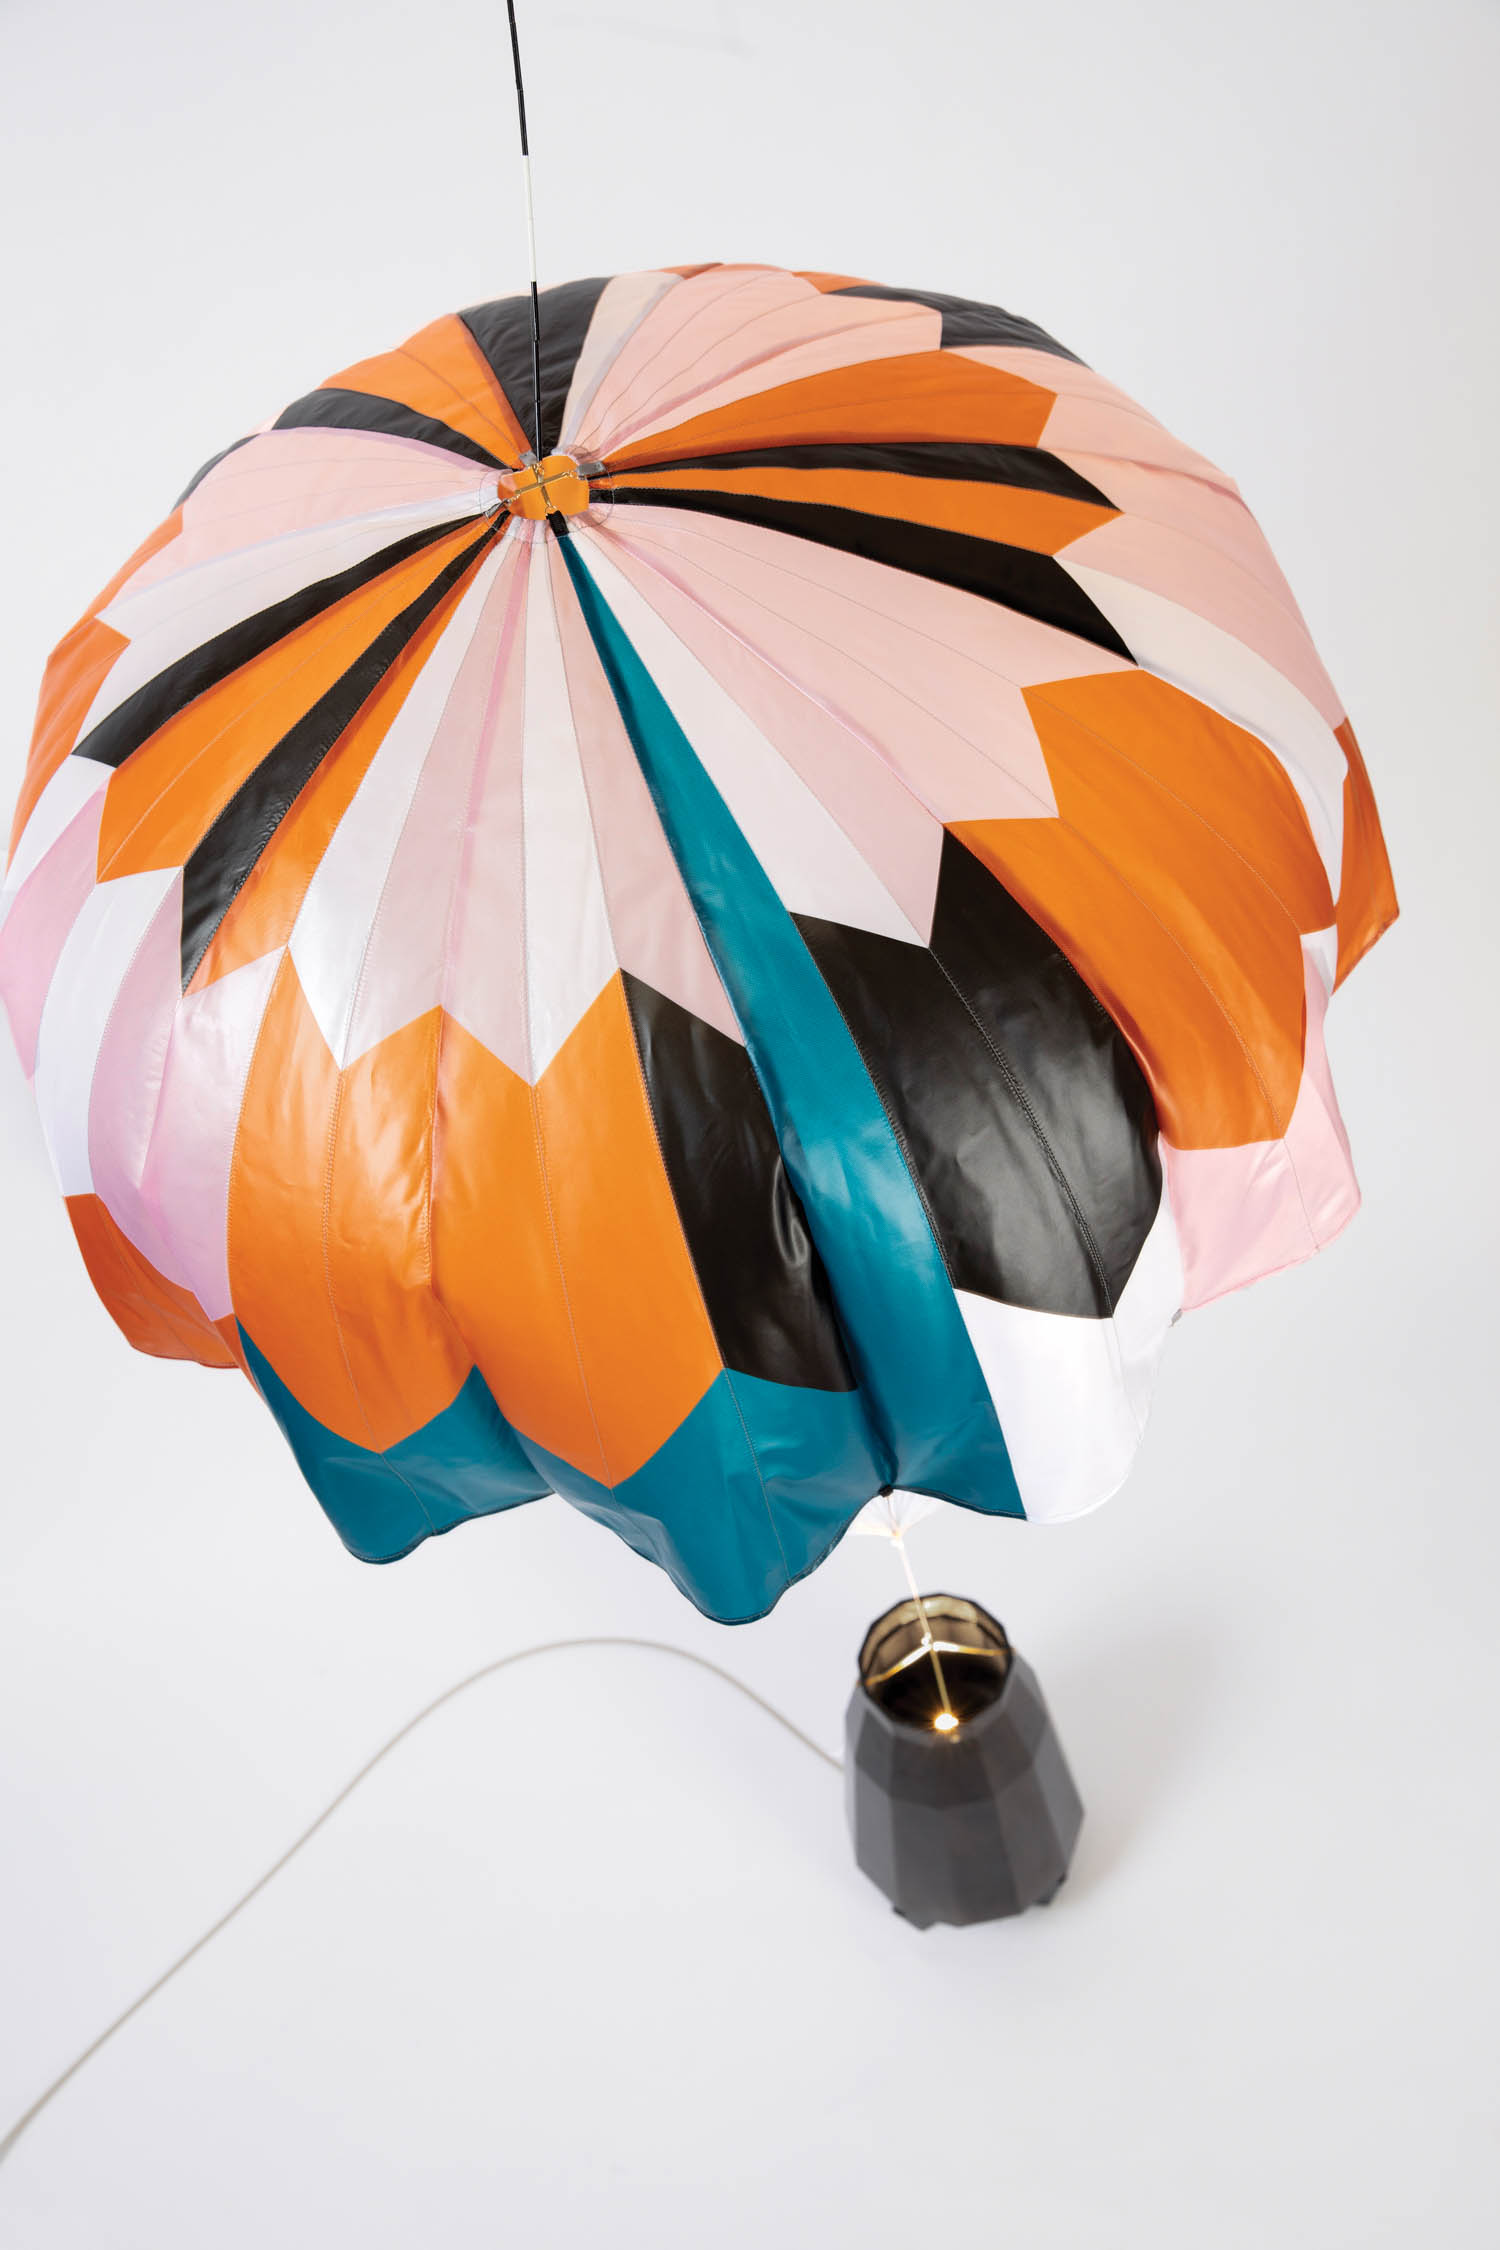 a lamp that looks like a hot air balloon